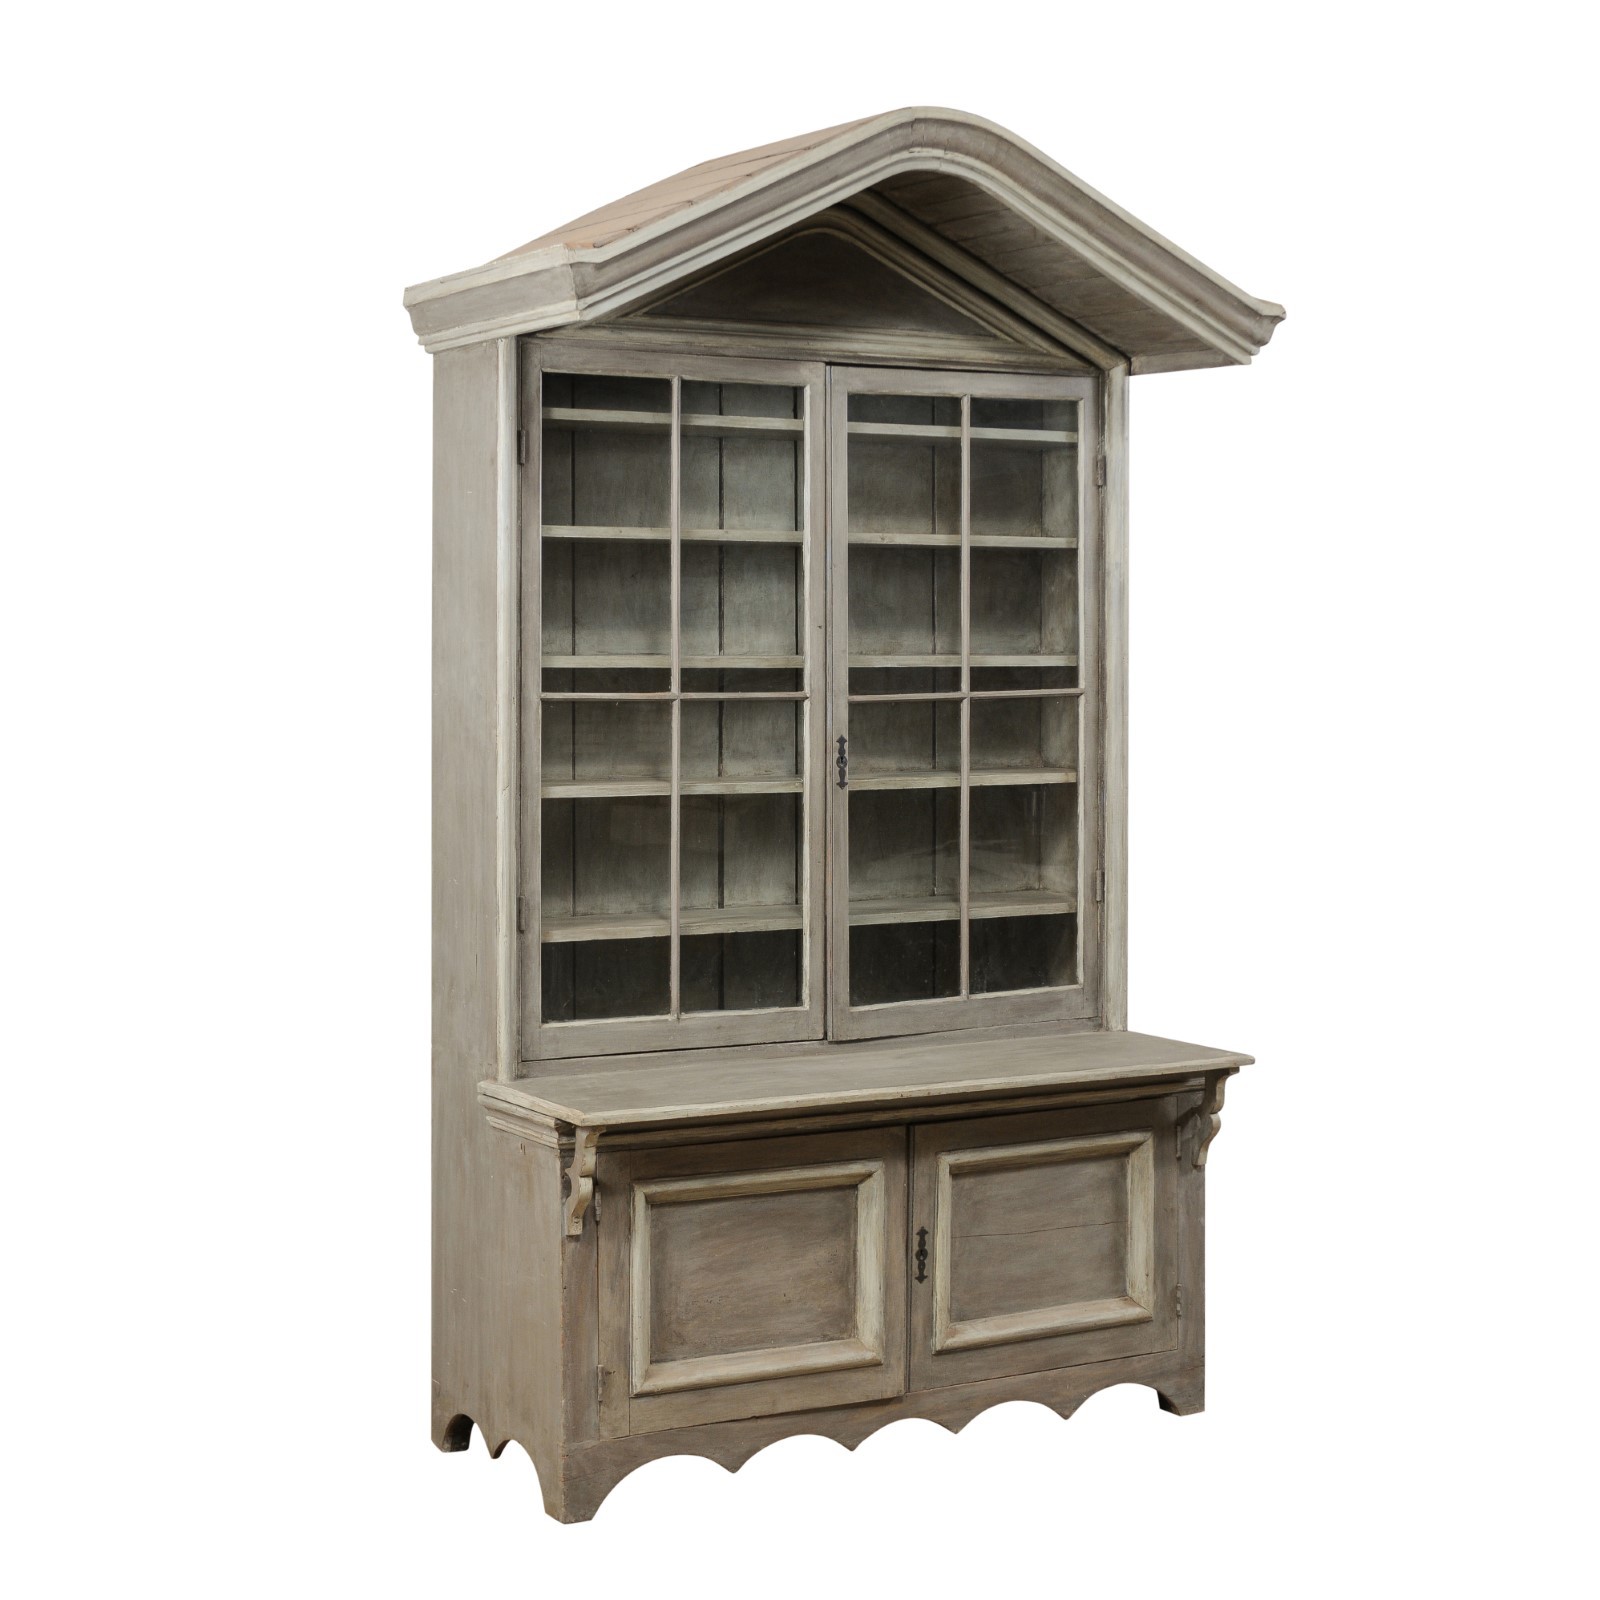 Antique Shop Cabinet w/ Canopy Bonnet Top